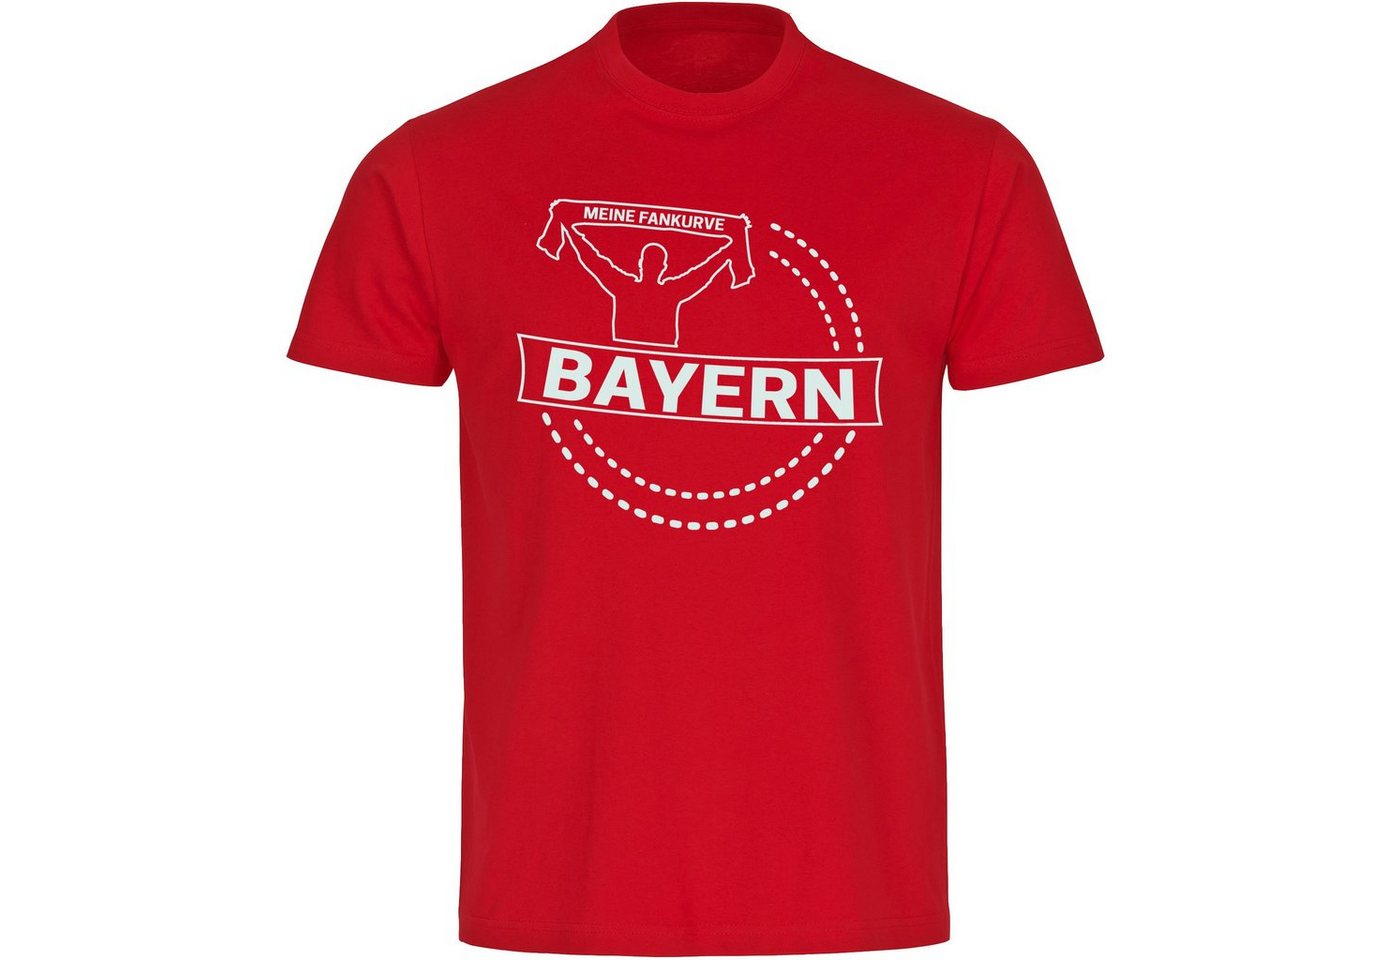 multifanshop T-Shirt Herren Bayern - Meine Fankurve - Männer von multifanshop